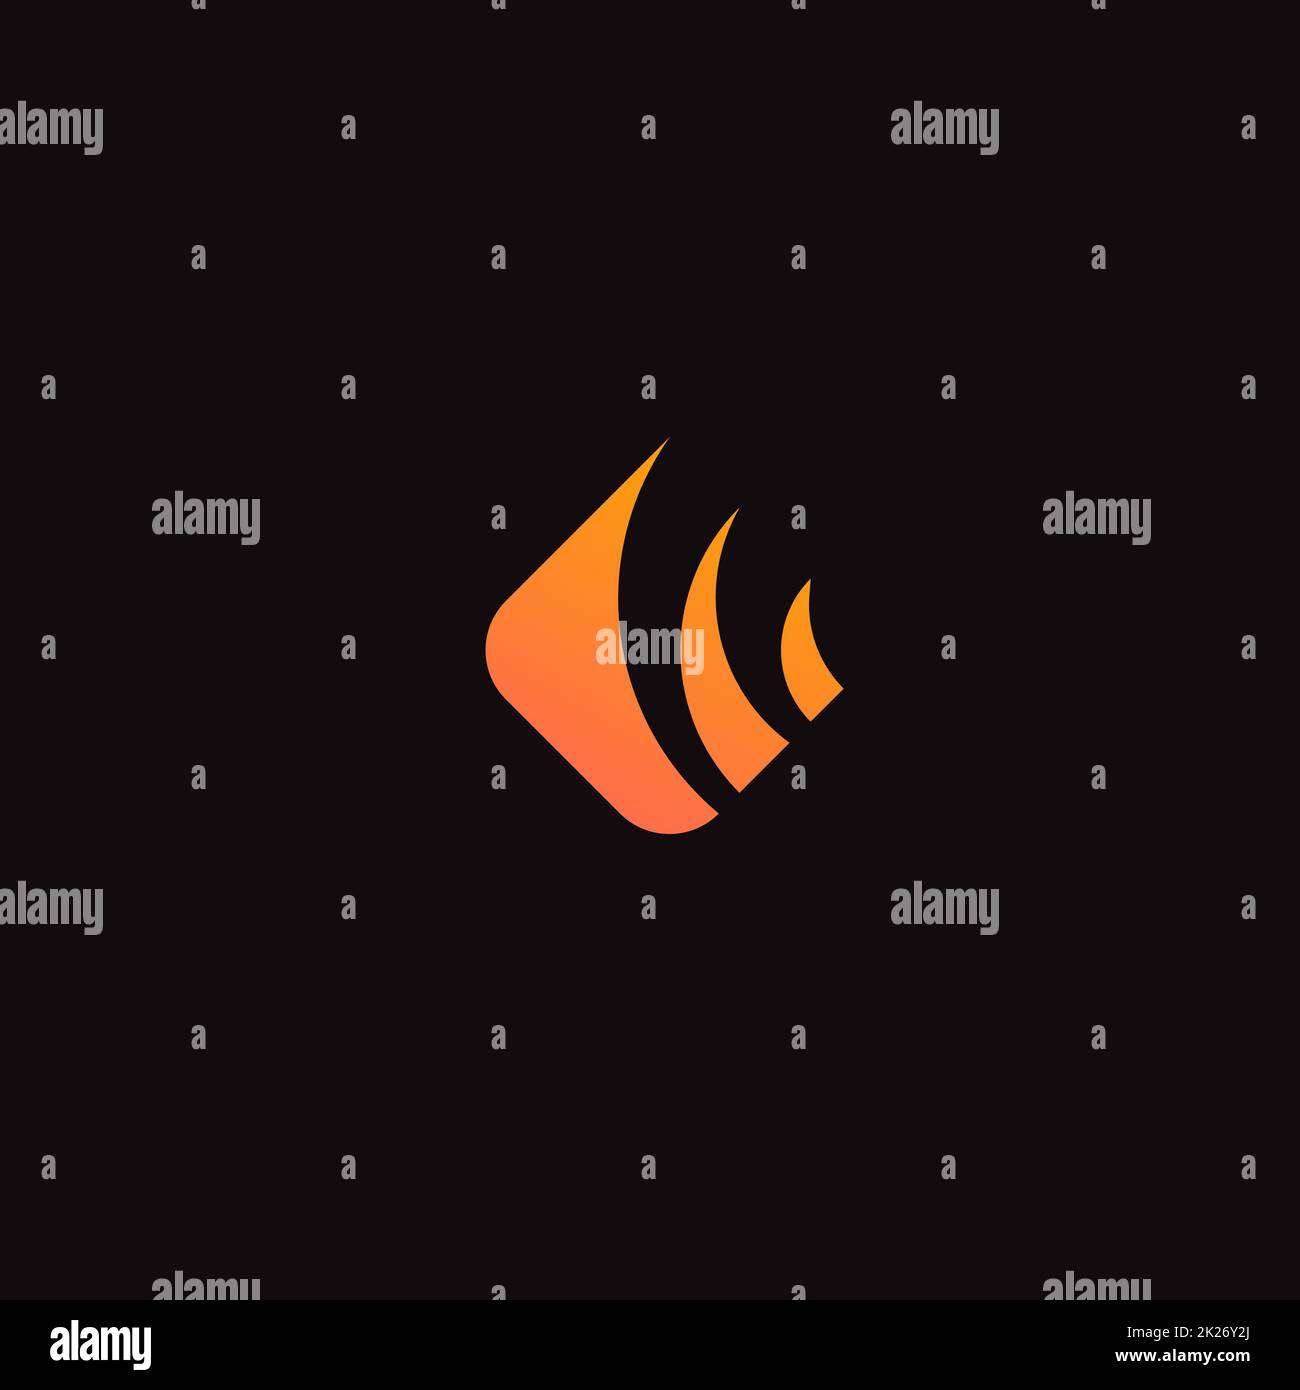 Feuersymbol, abstrakte Logovorlage. Symbol für brennende Flamme, Etikett mit Rautenform. Isoliertes, minimalistisches Design im Stil einer Silhouette. Orangefarbenes Vektorzeichen Stockfoto